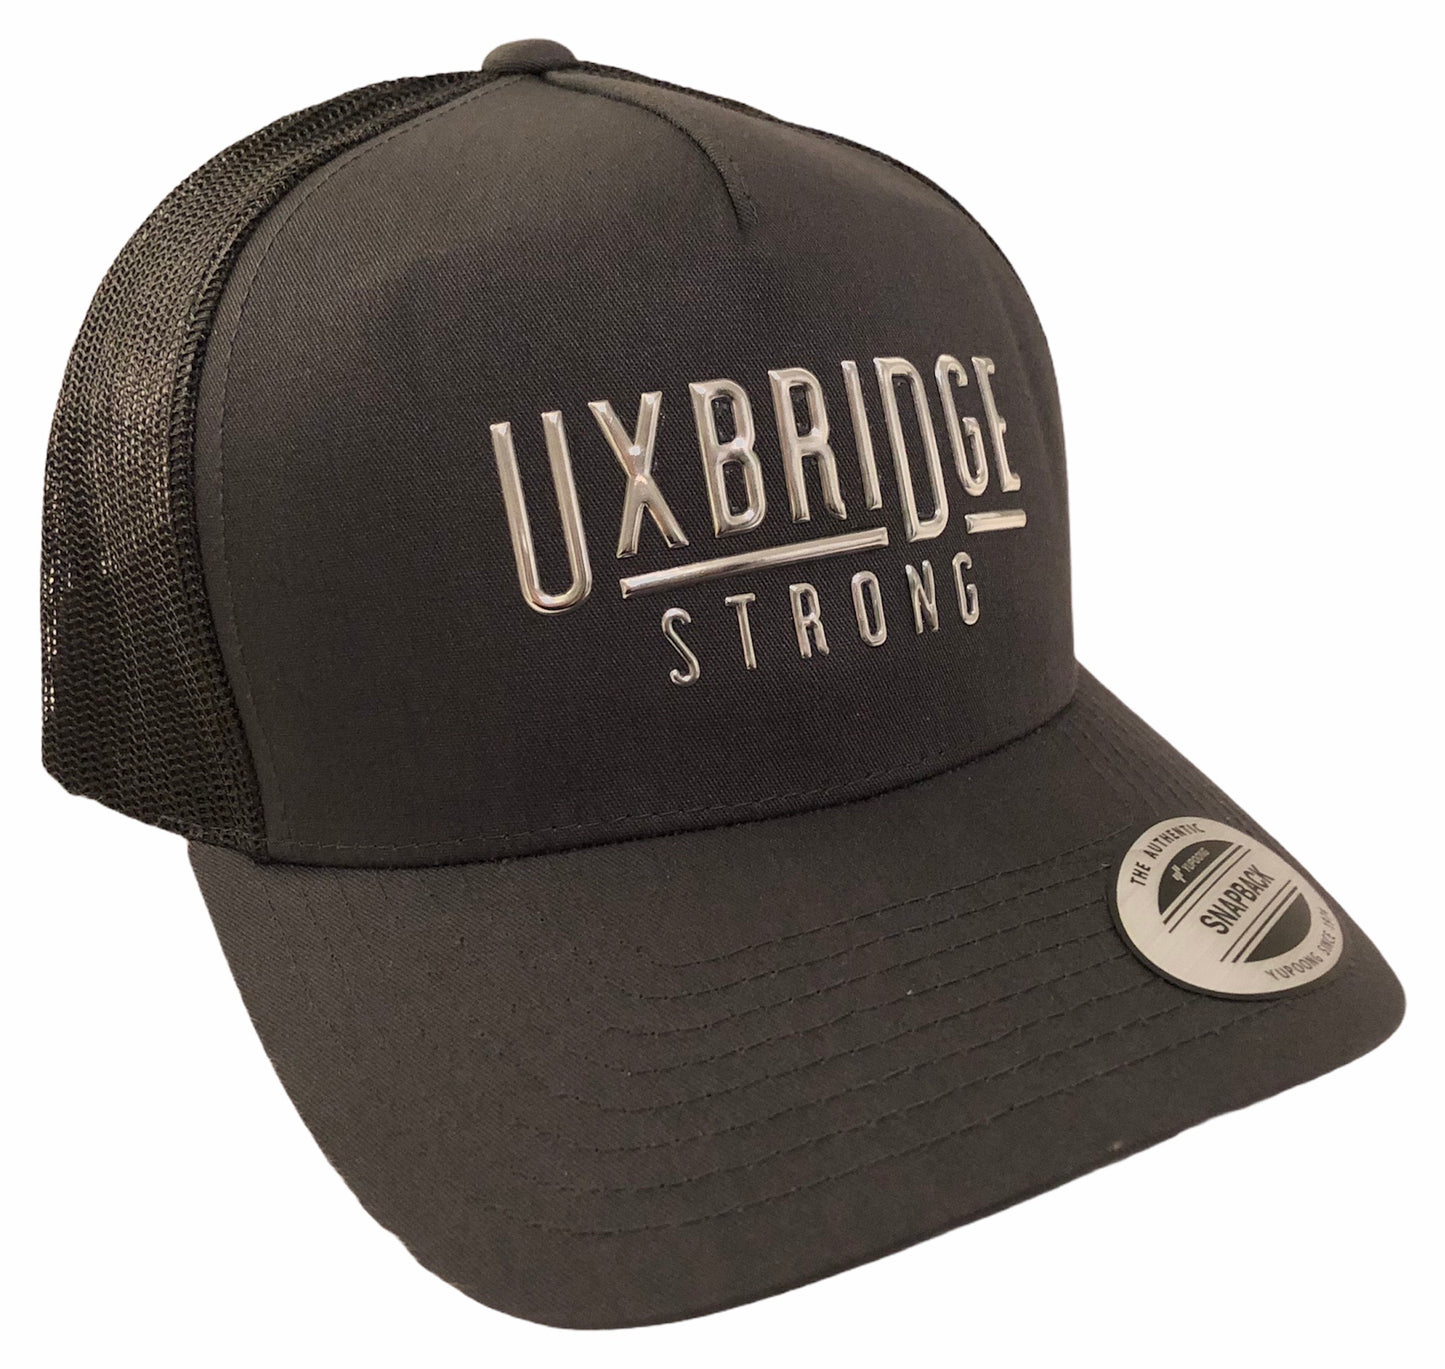 Uxbridge Strong Trucker Cap